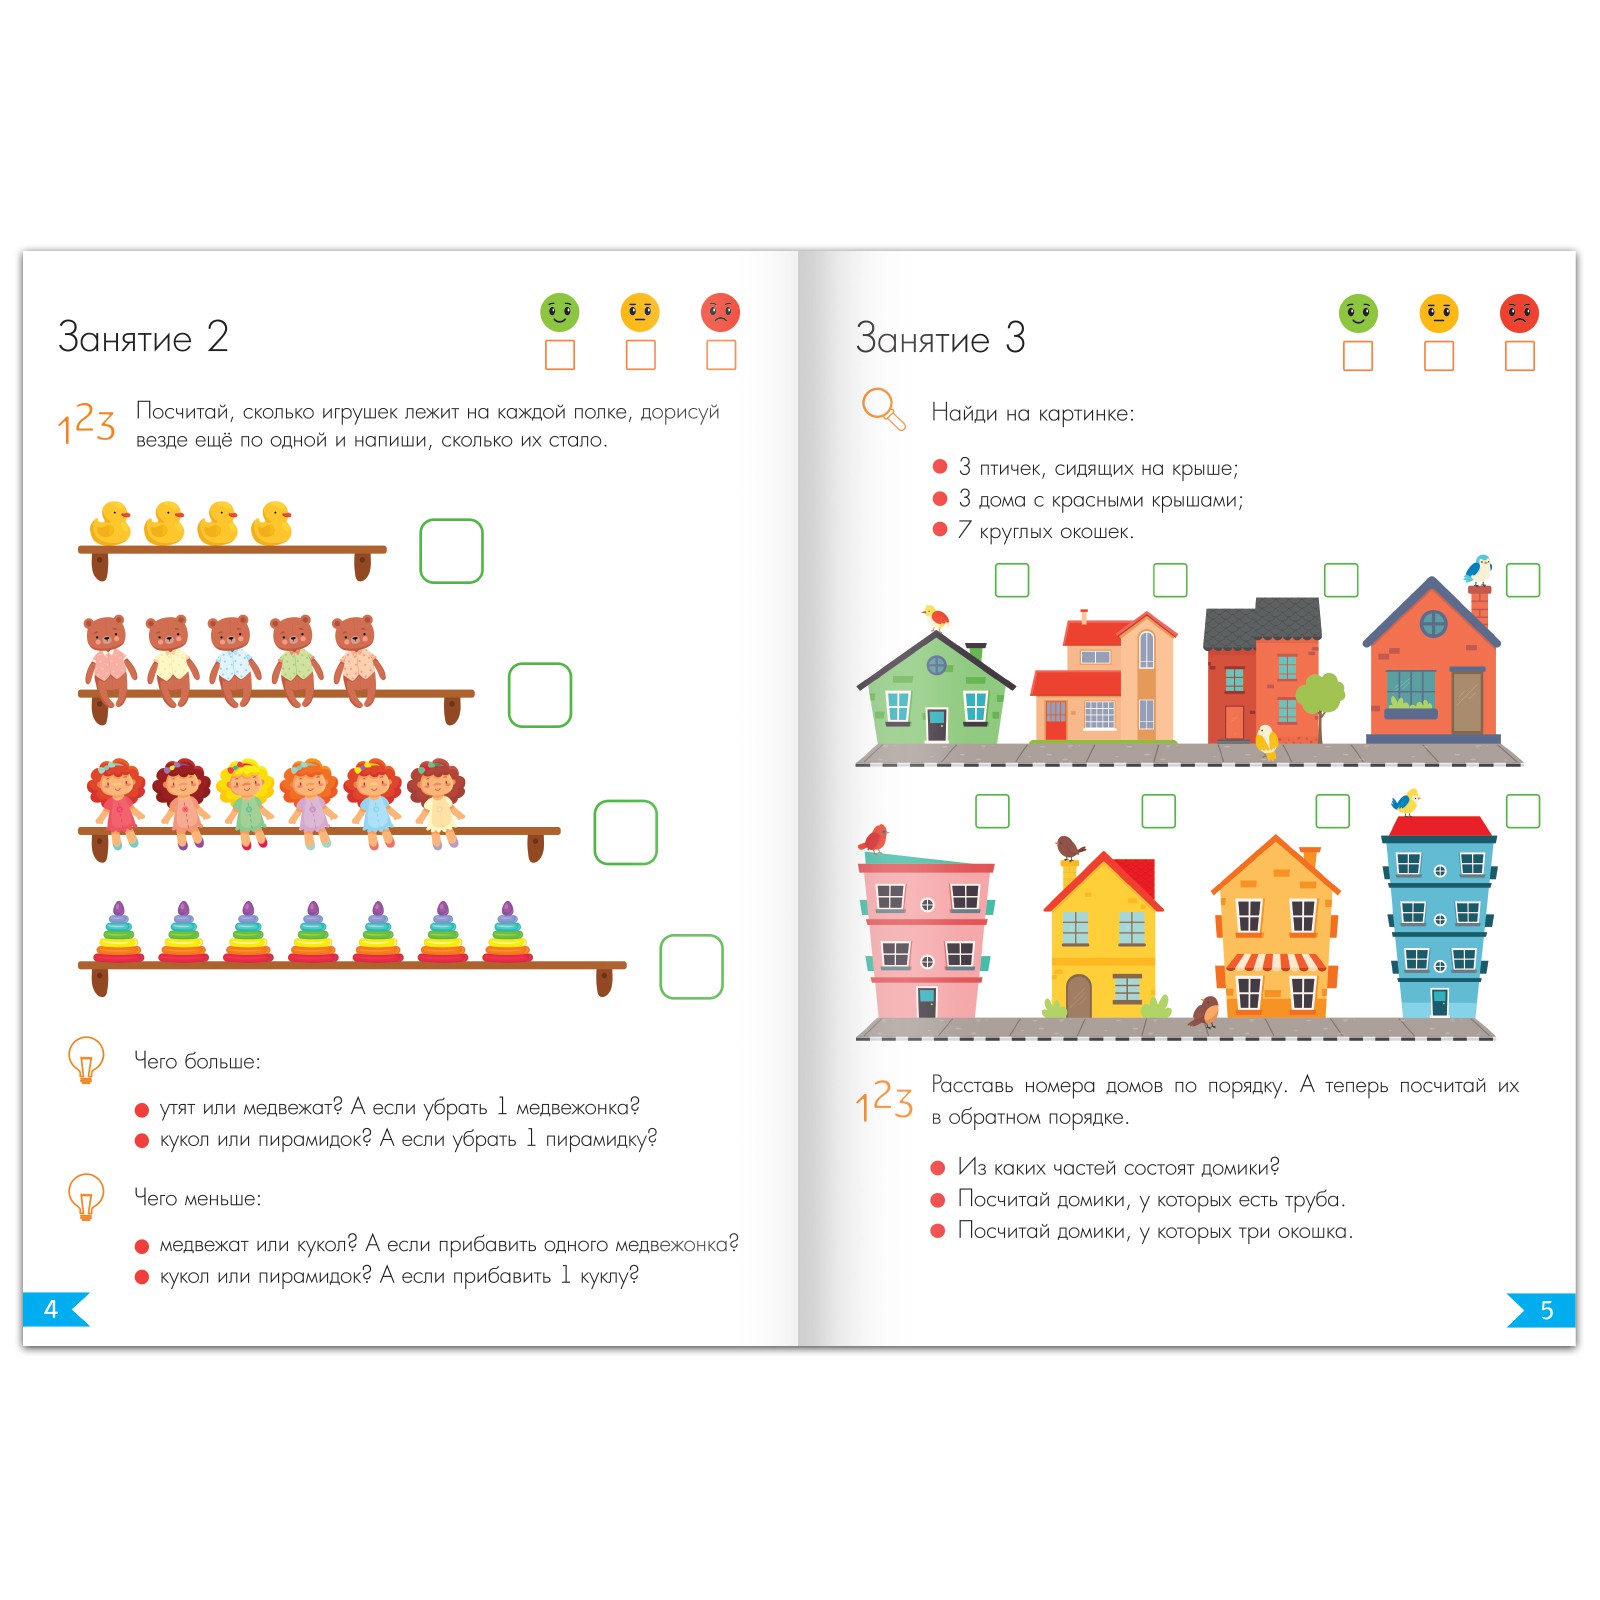 Обучающая книга Буква-ленд «Годовой курс занятий» для детей 5-6 лет 100 страниц - фото 3